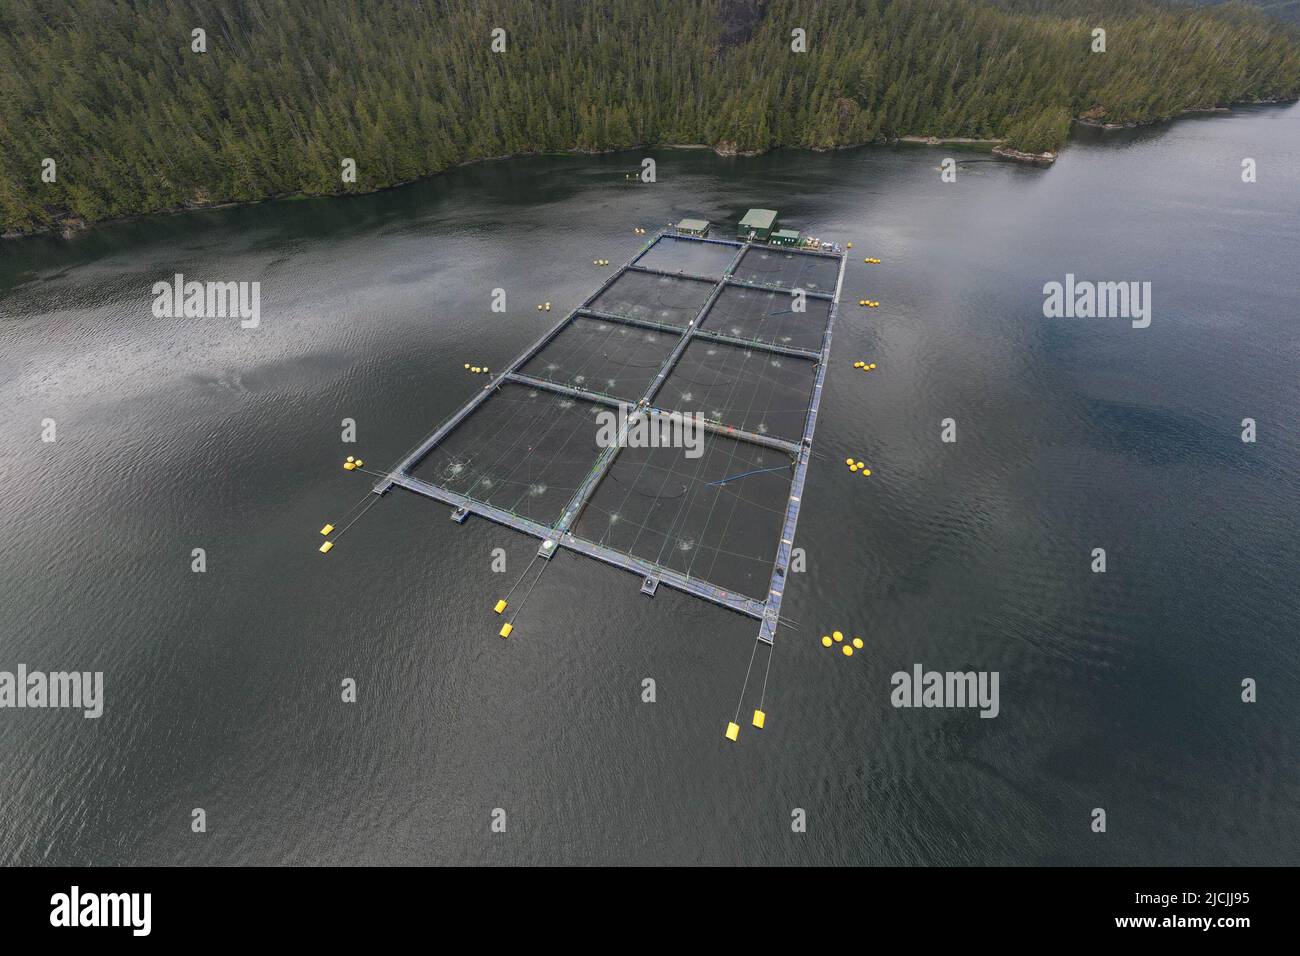 Ferme de saumon atlantique sur la côte sud-ouest de l'île de Vancouver, Colombie-Britannique, Canada. Banque D'Images